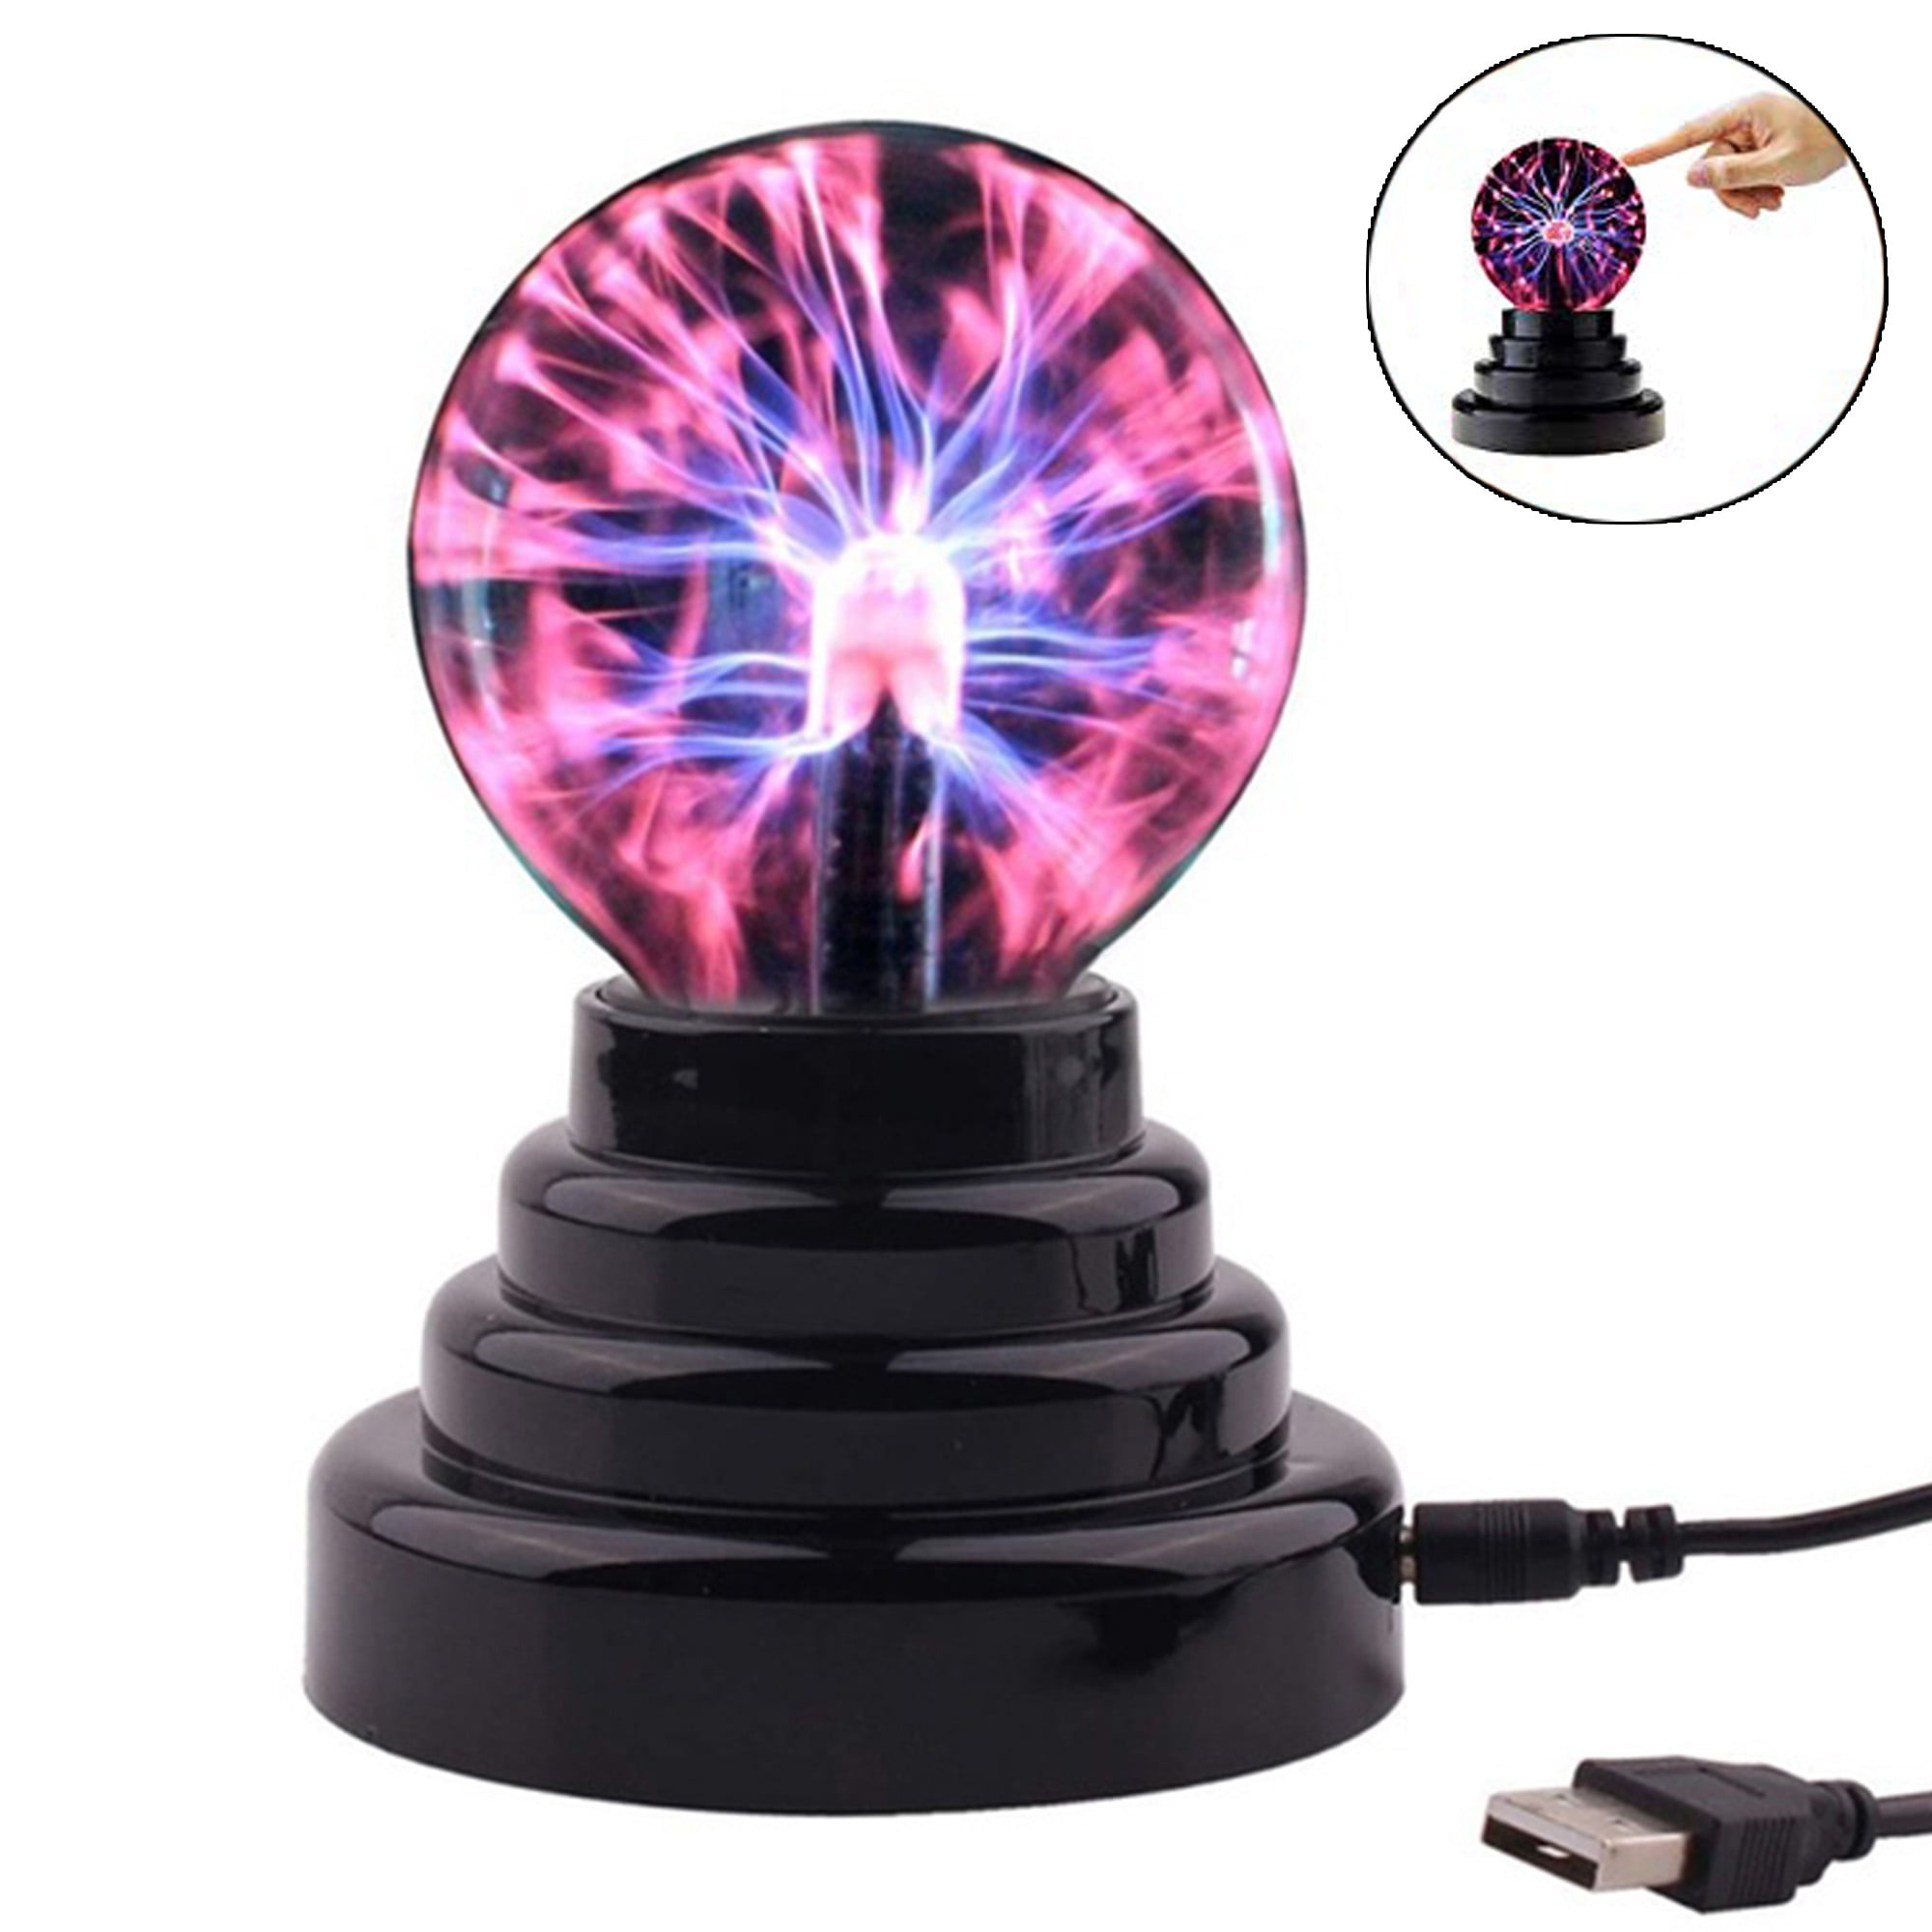 Plasma Ball Lamp Light,Touch Sensitive Lightning Lights USB Globe Sphere Ball， Delicate Household/Office Desktop Decorations 